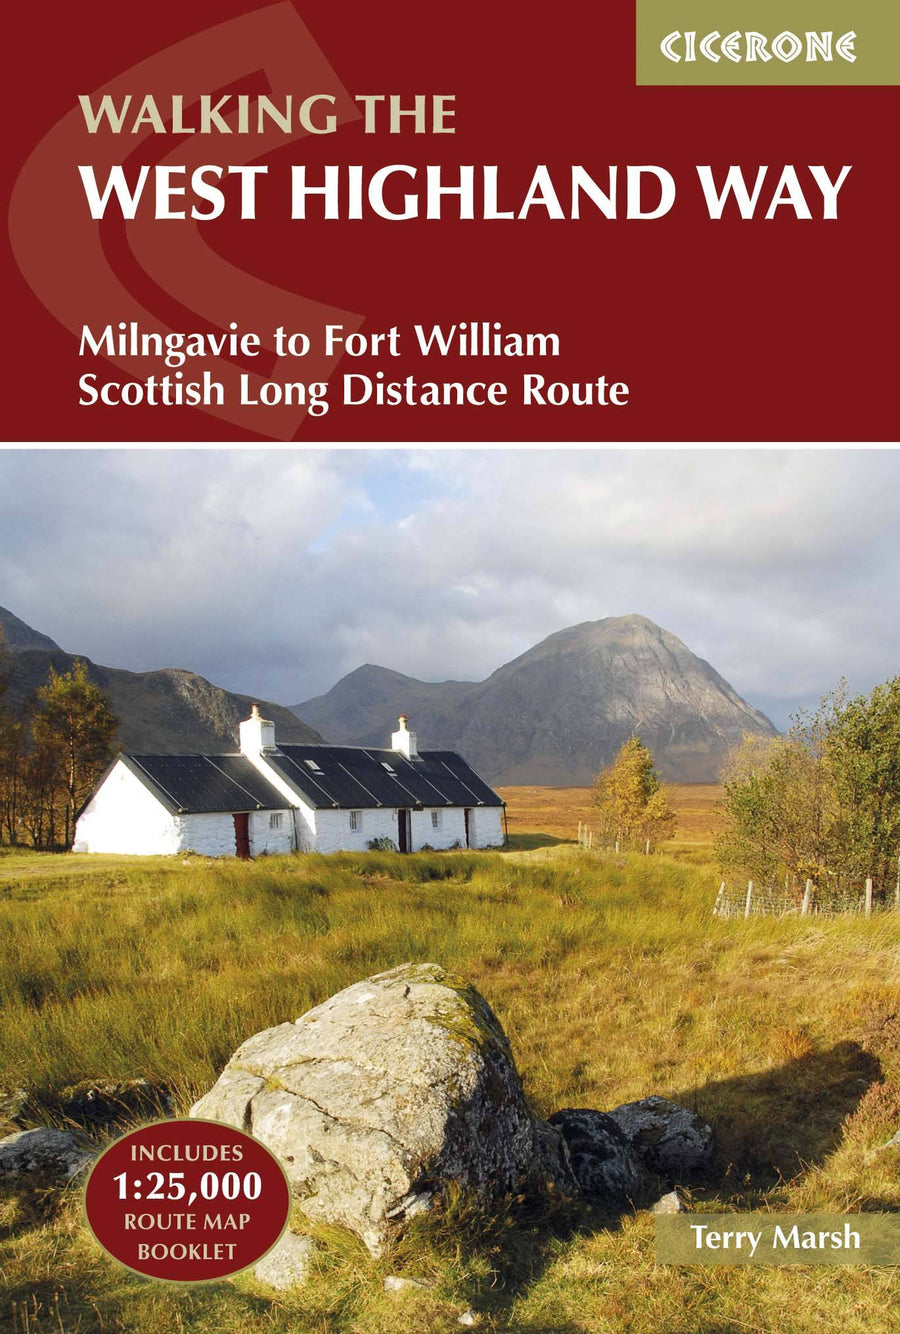 Guide de randonnées (en anglais) - West Highland Way, from Milngavie to Fort William | Cicerone guide de randonnée Cicerone 